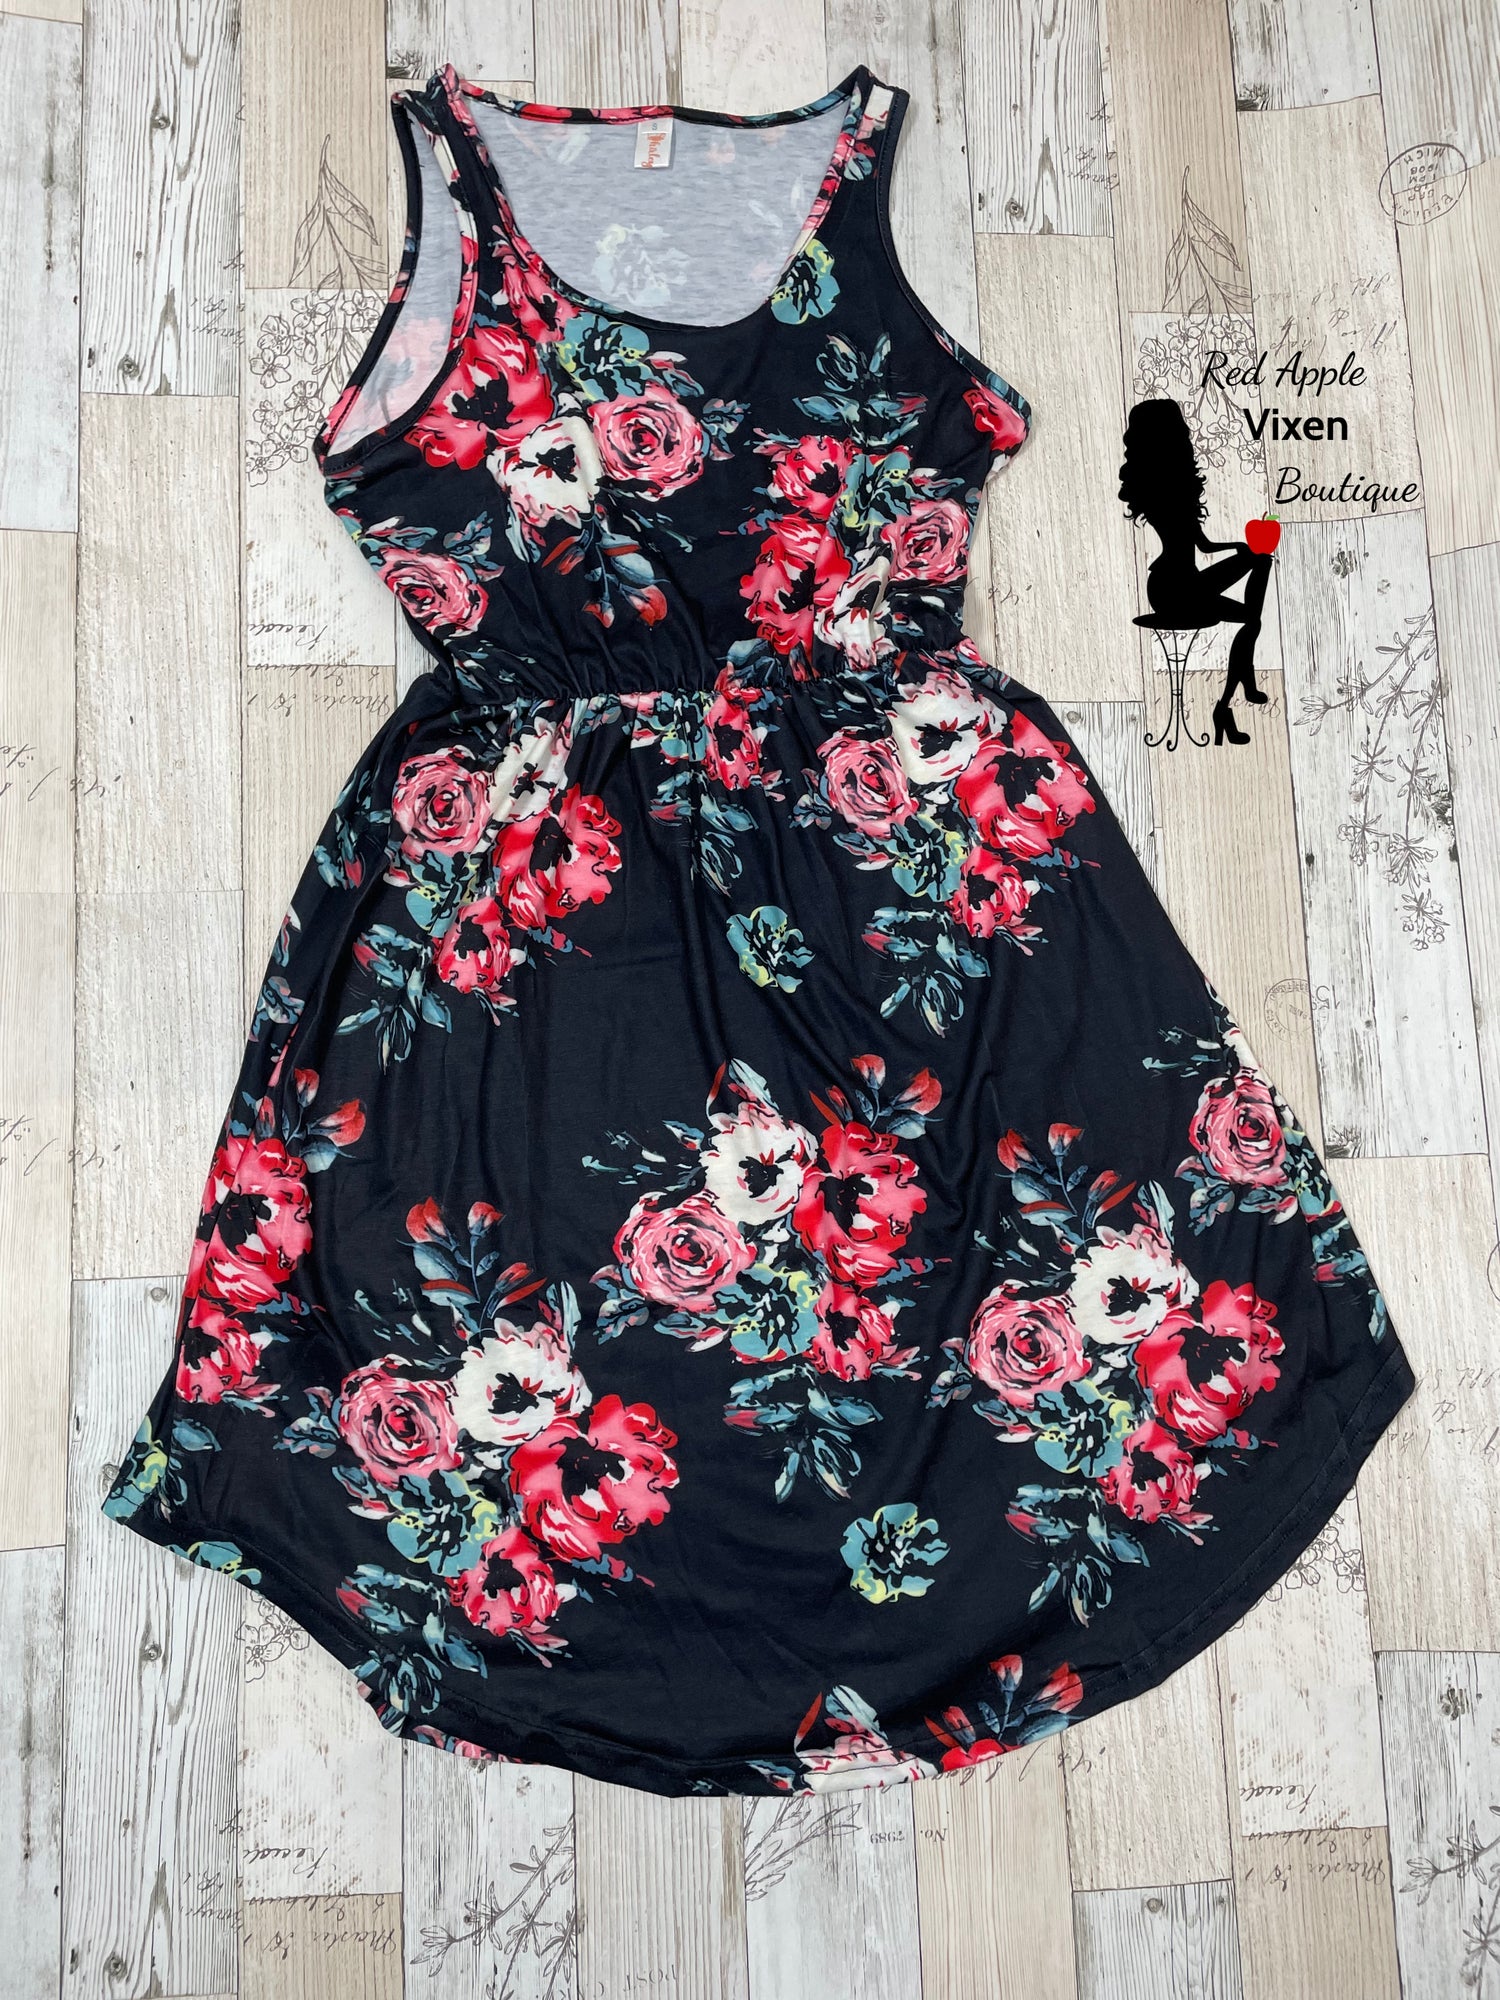 Black Background Floral Sun Dress - Red Apple Vixen Boutique